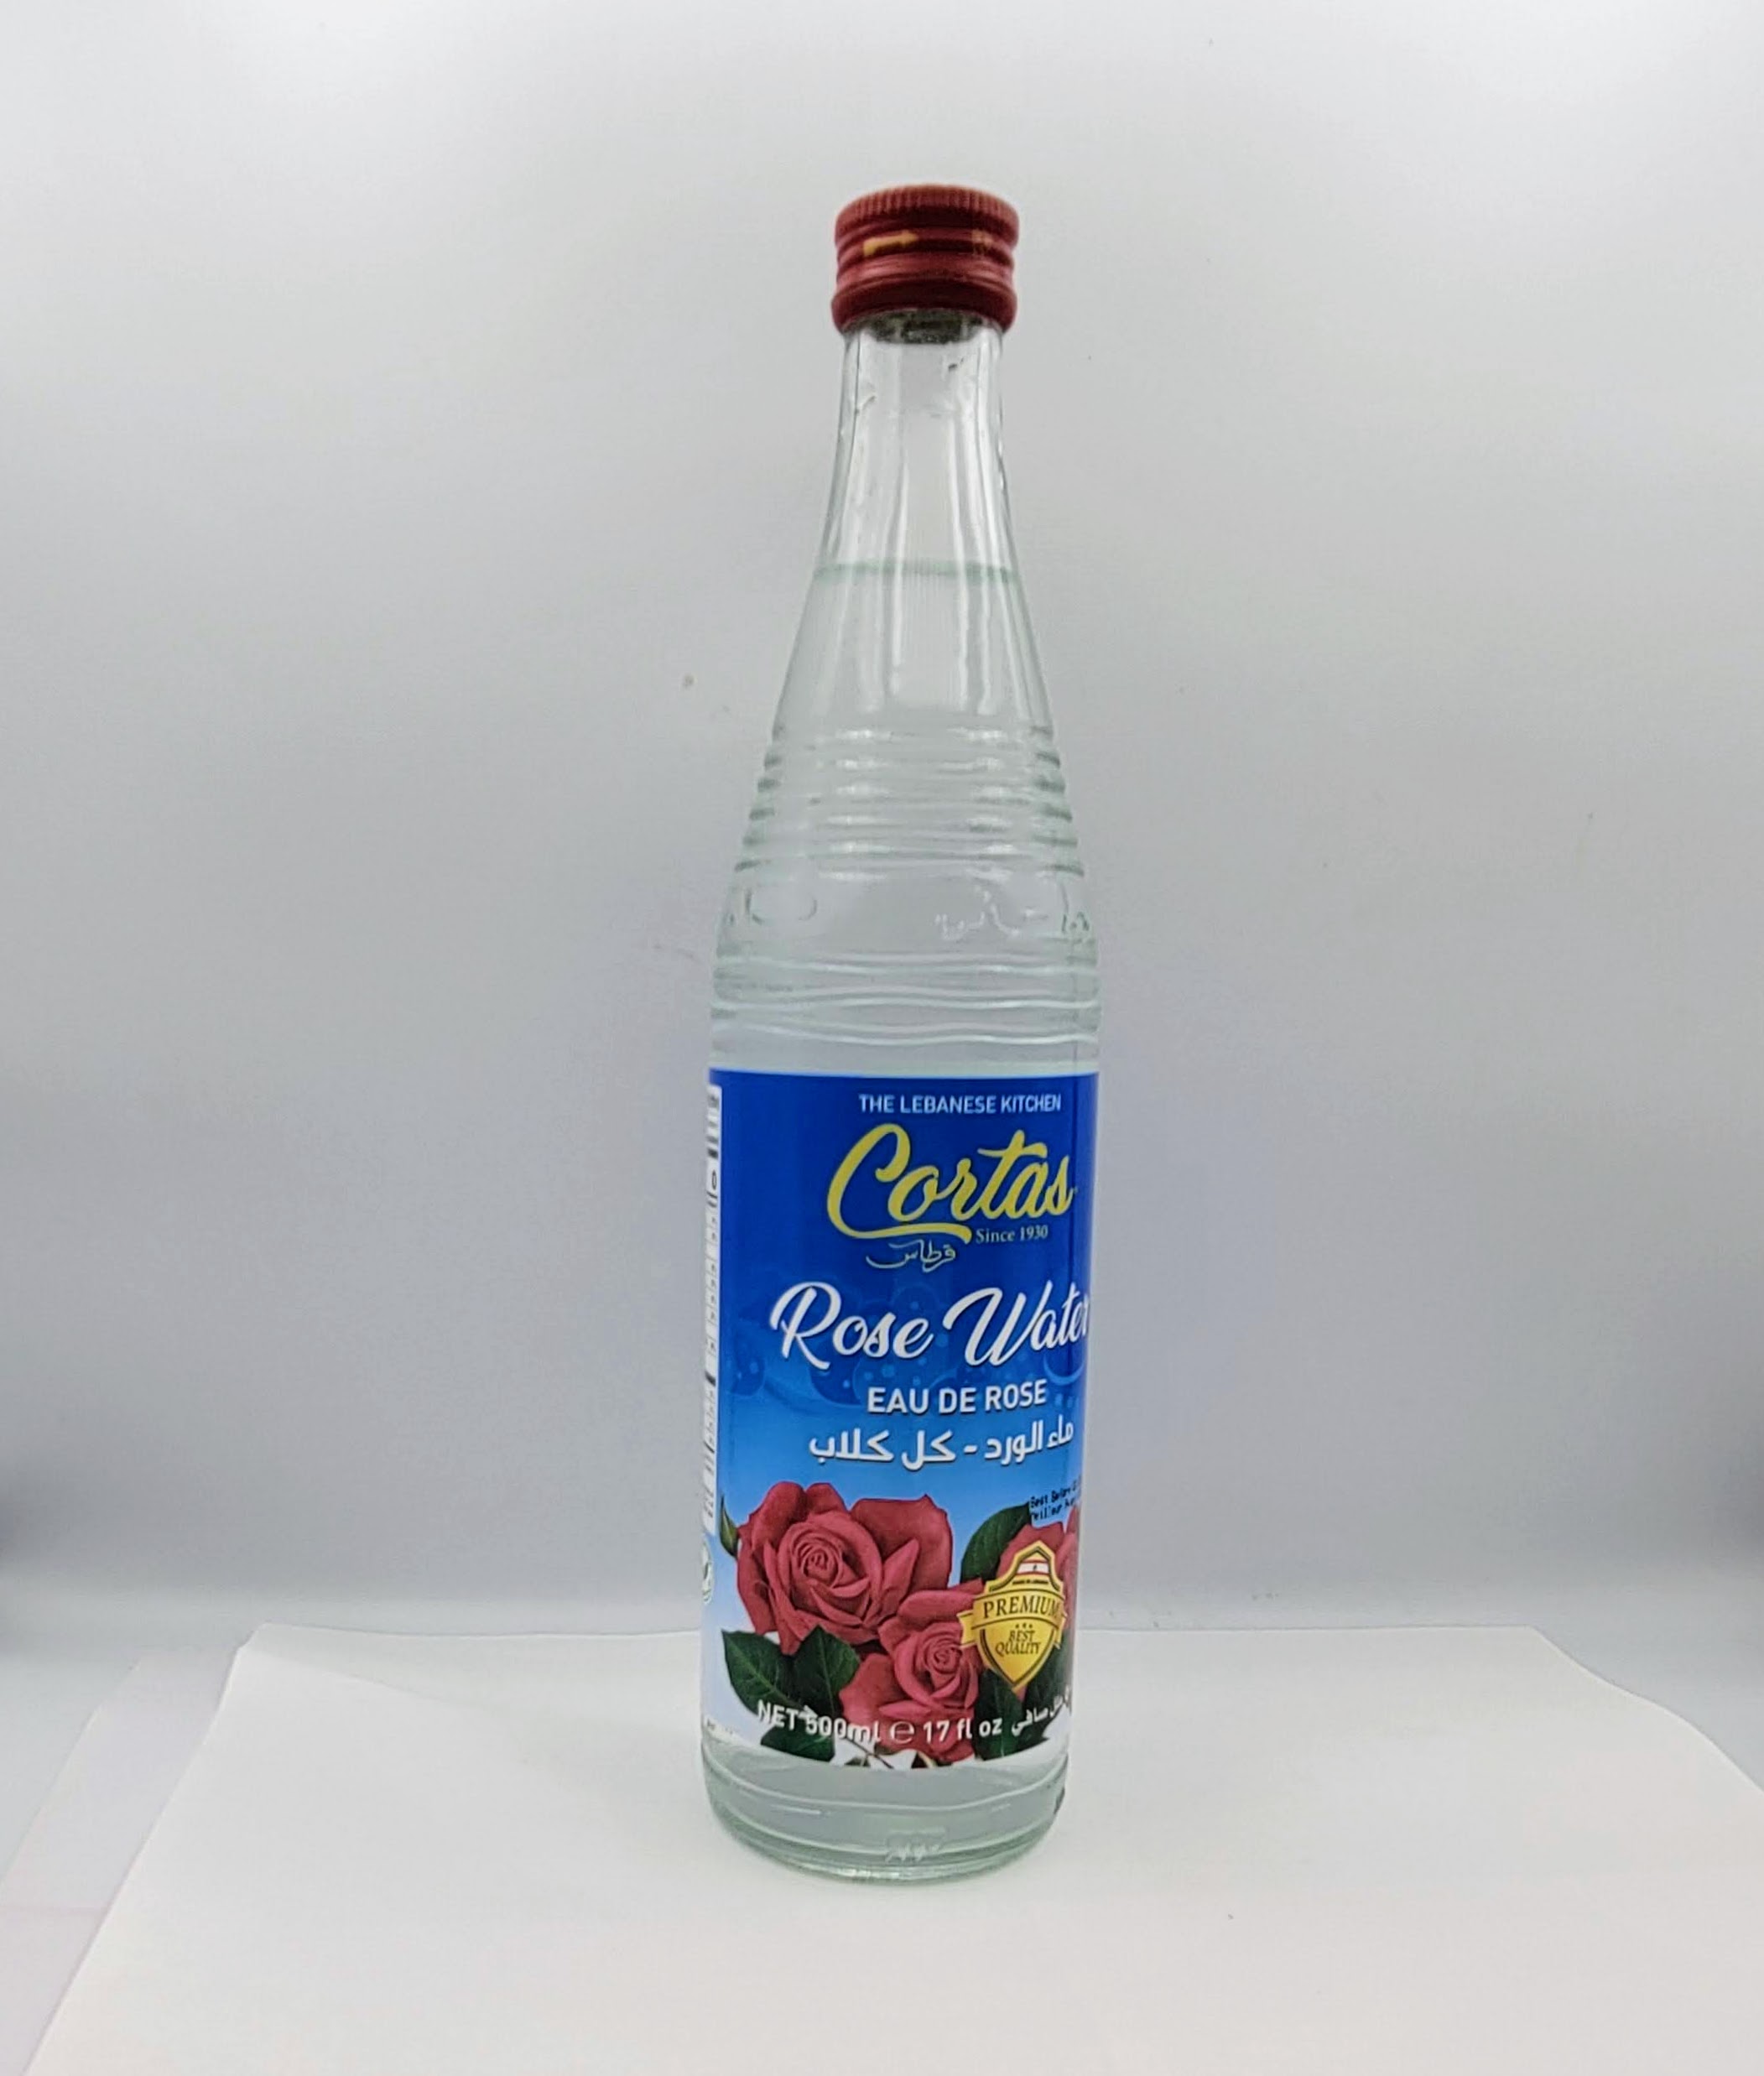 Cortas Rose Water